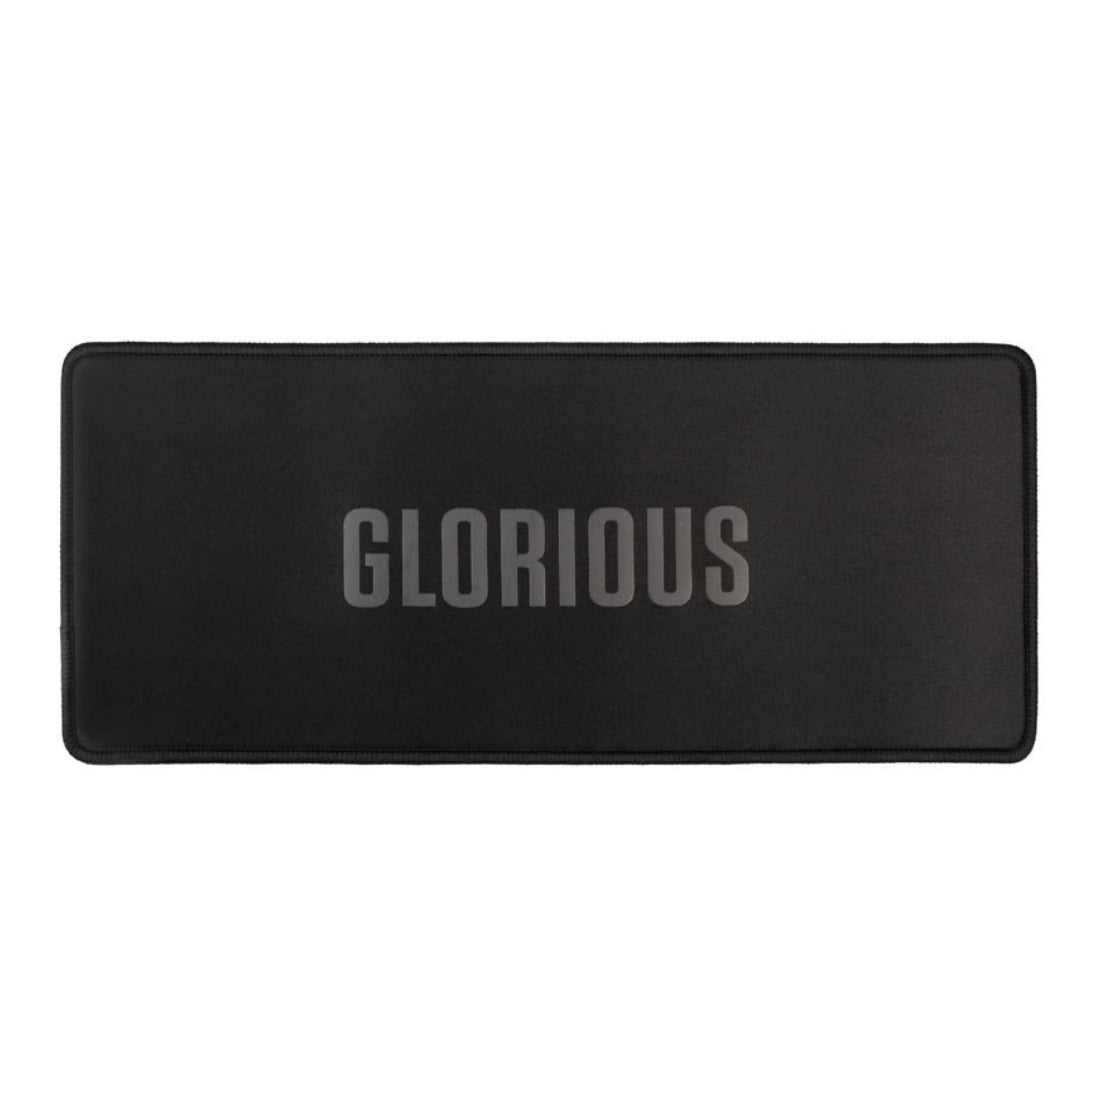 Glorious Sound Dampening 75% TKL Keyboard Mat - Black - حصيرة لوحة مفاتيح - Store 974 | ستور ٩٧٤